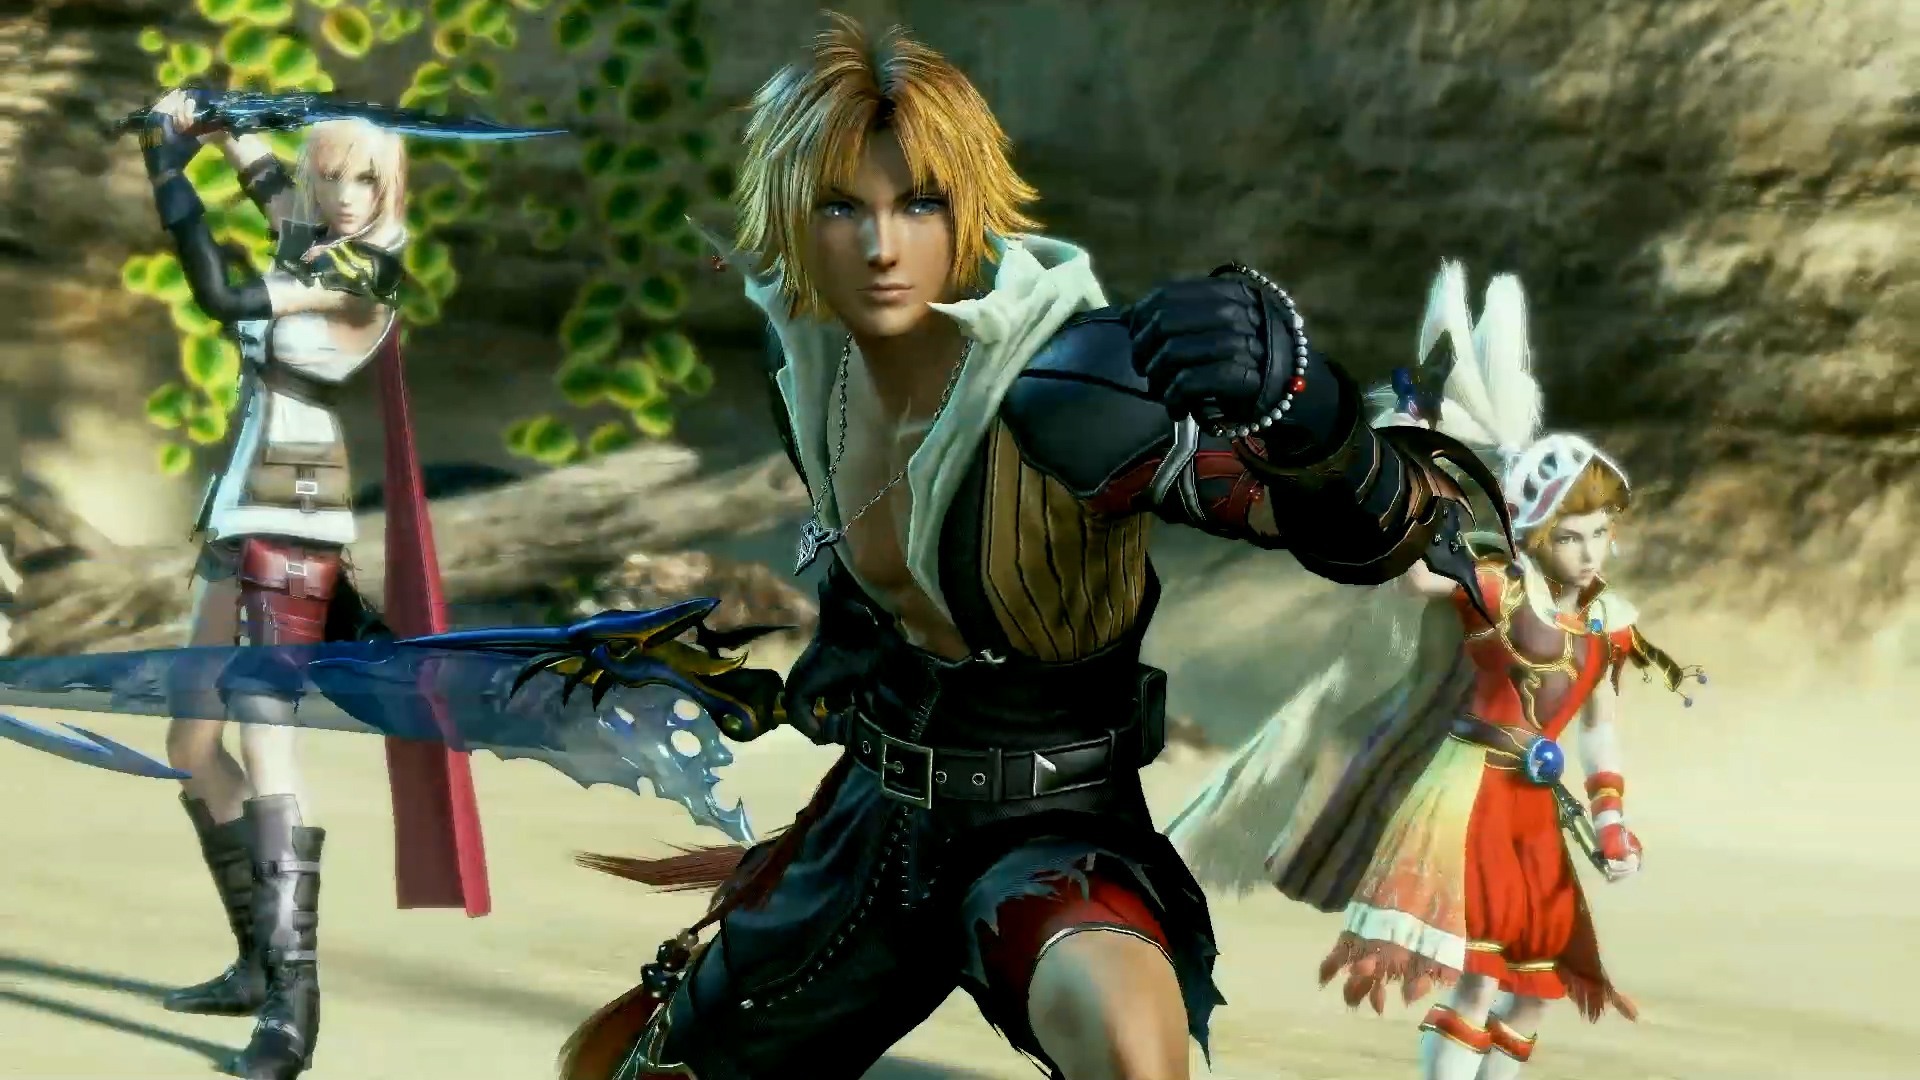 O jogo “Dissidia Final Fantasy NT” ganhou um novo trailer do seu Beta